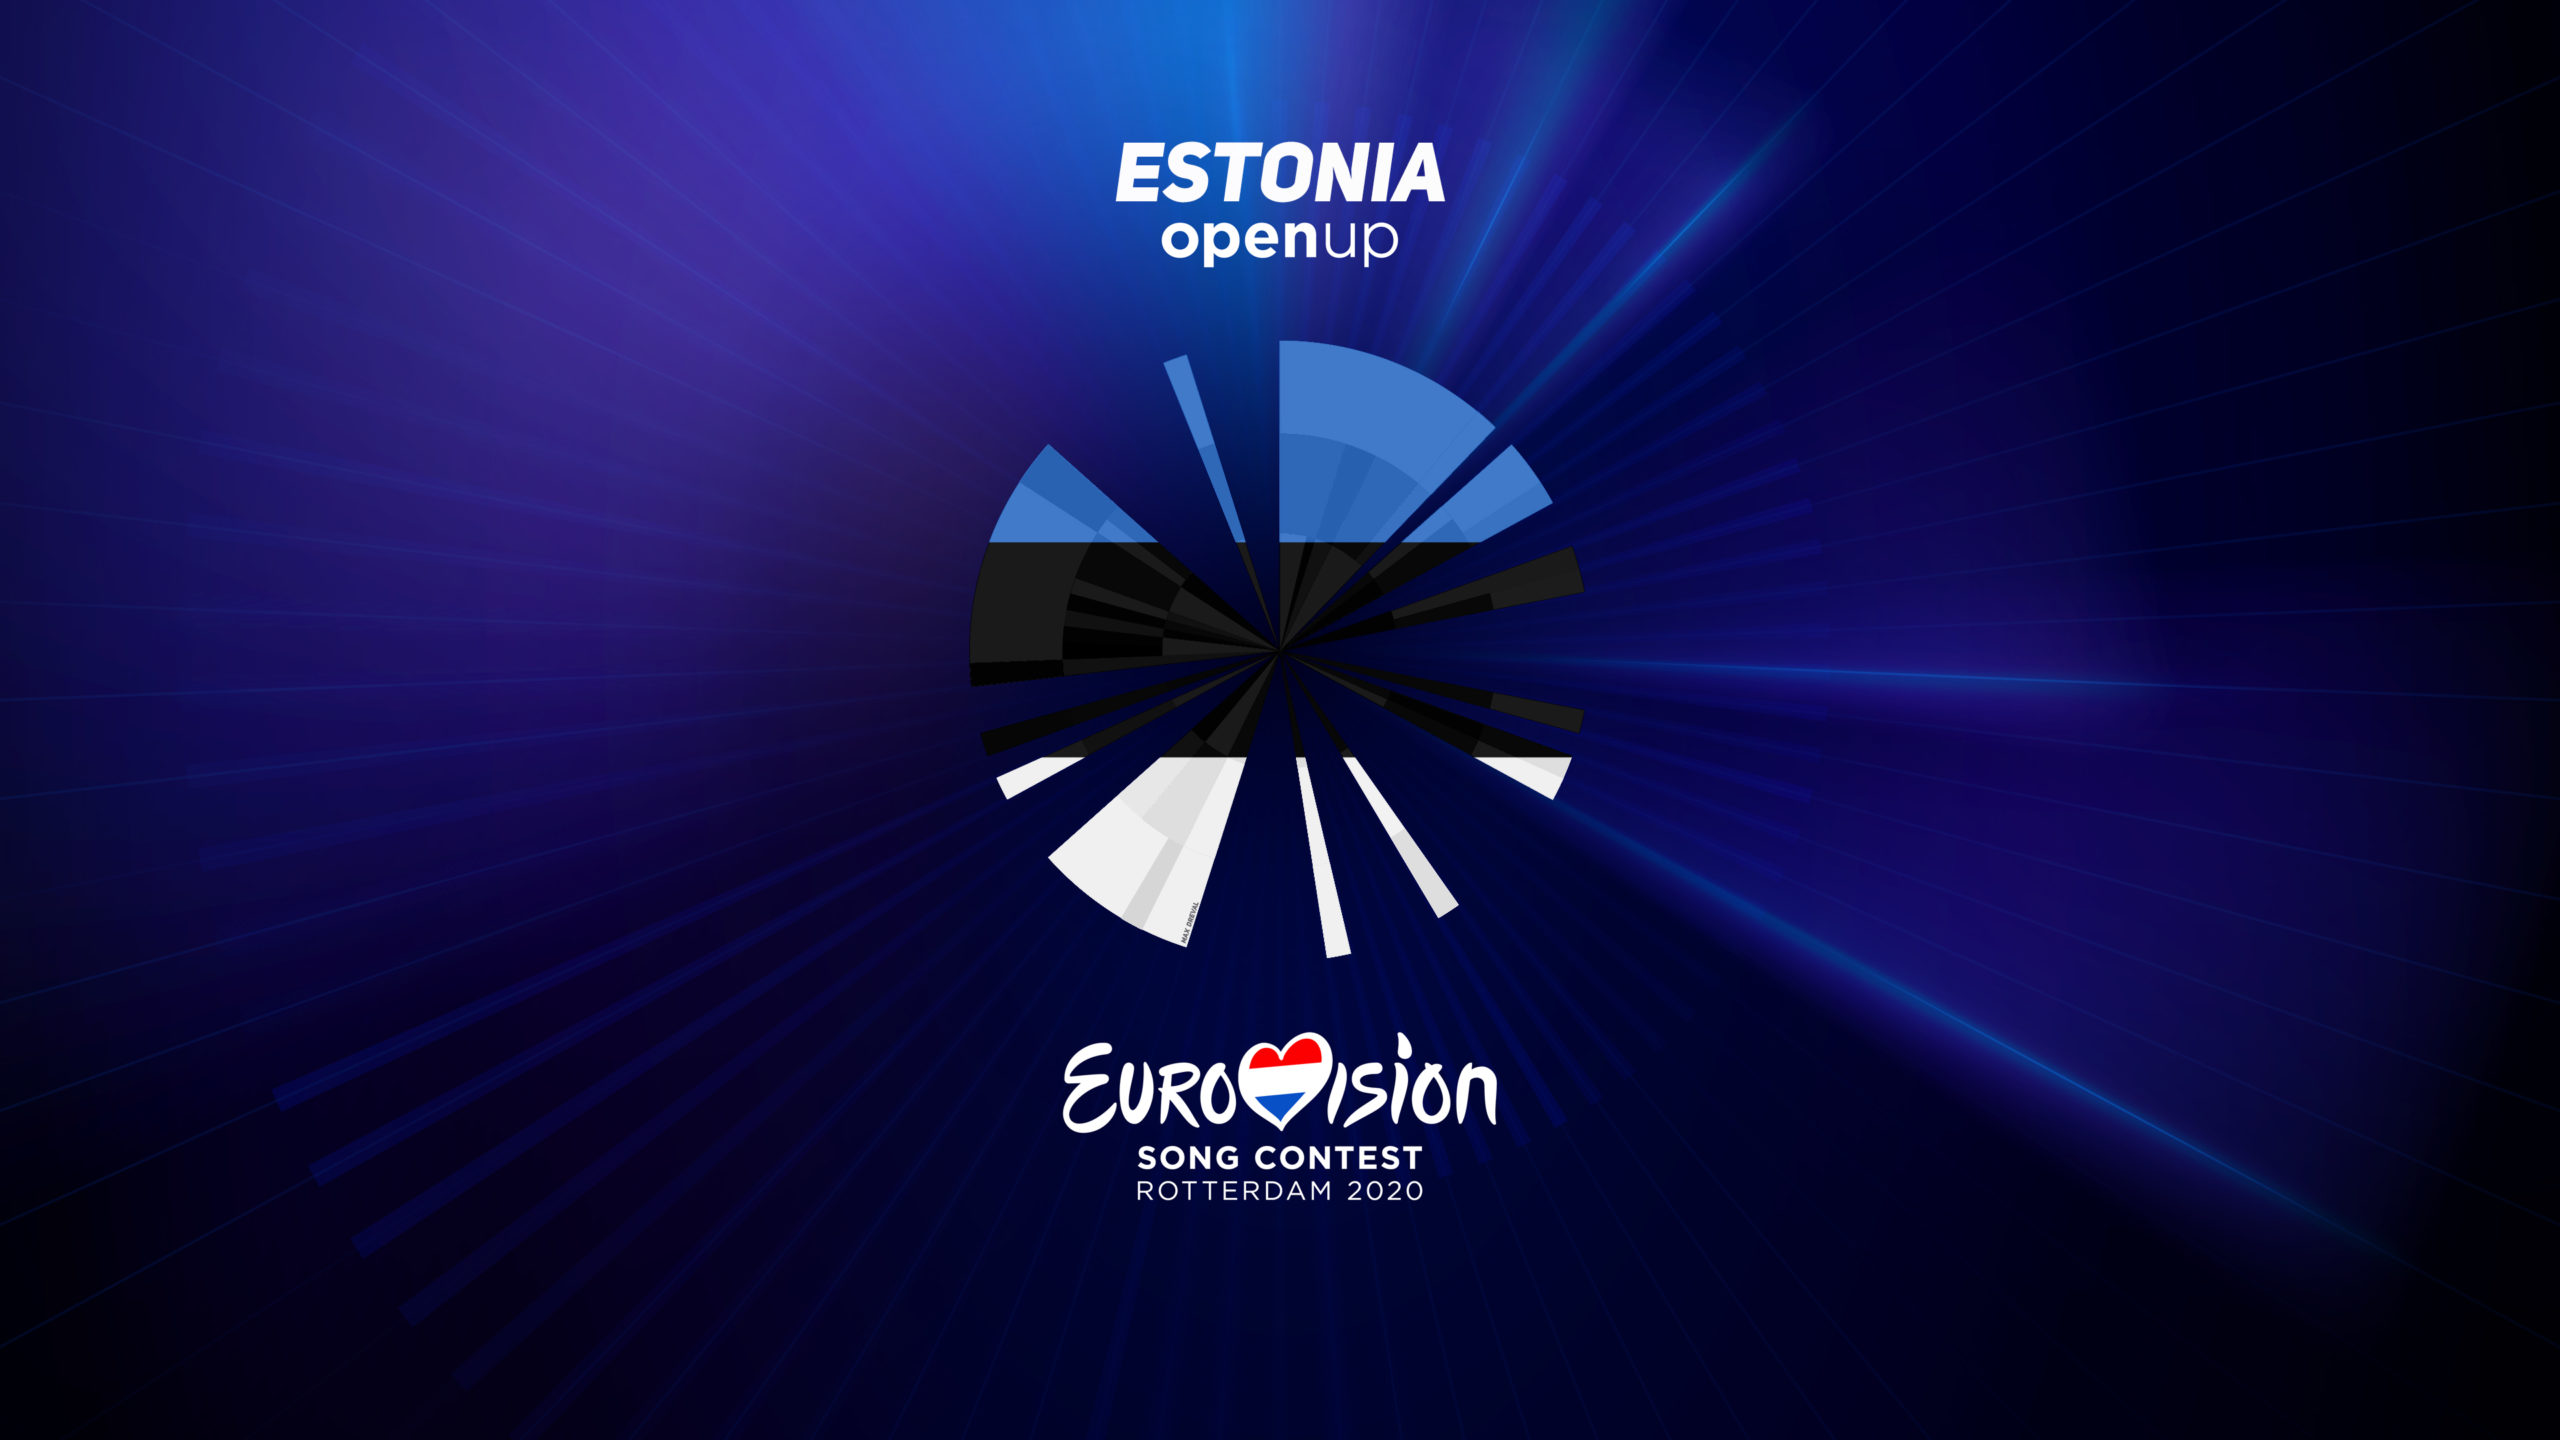 Estonia-scaled.jpg